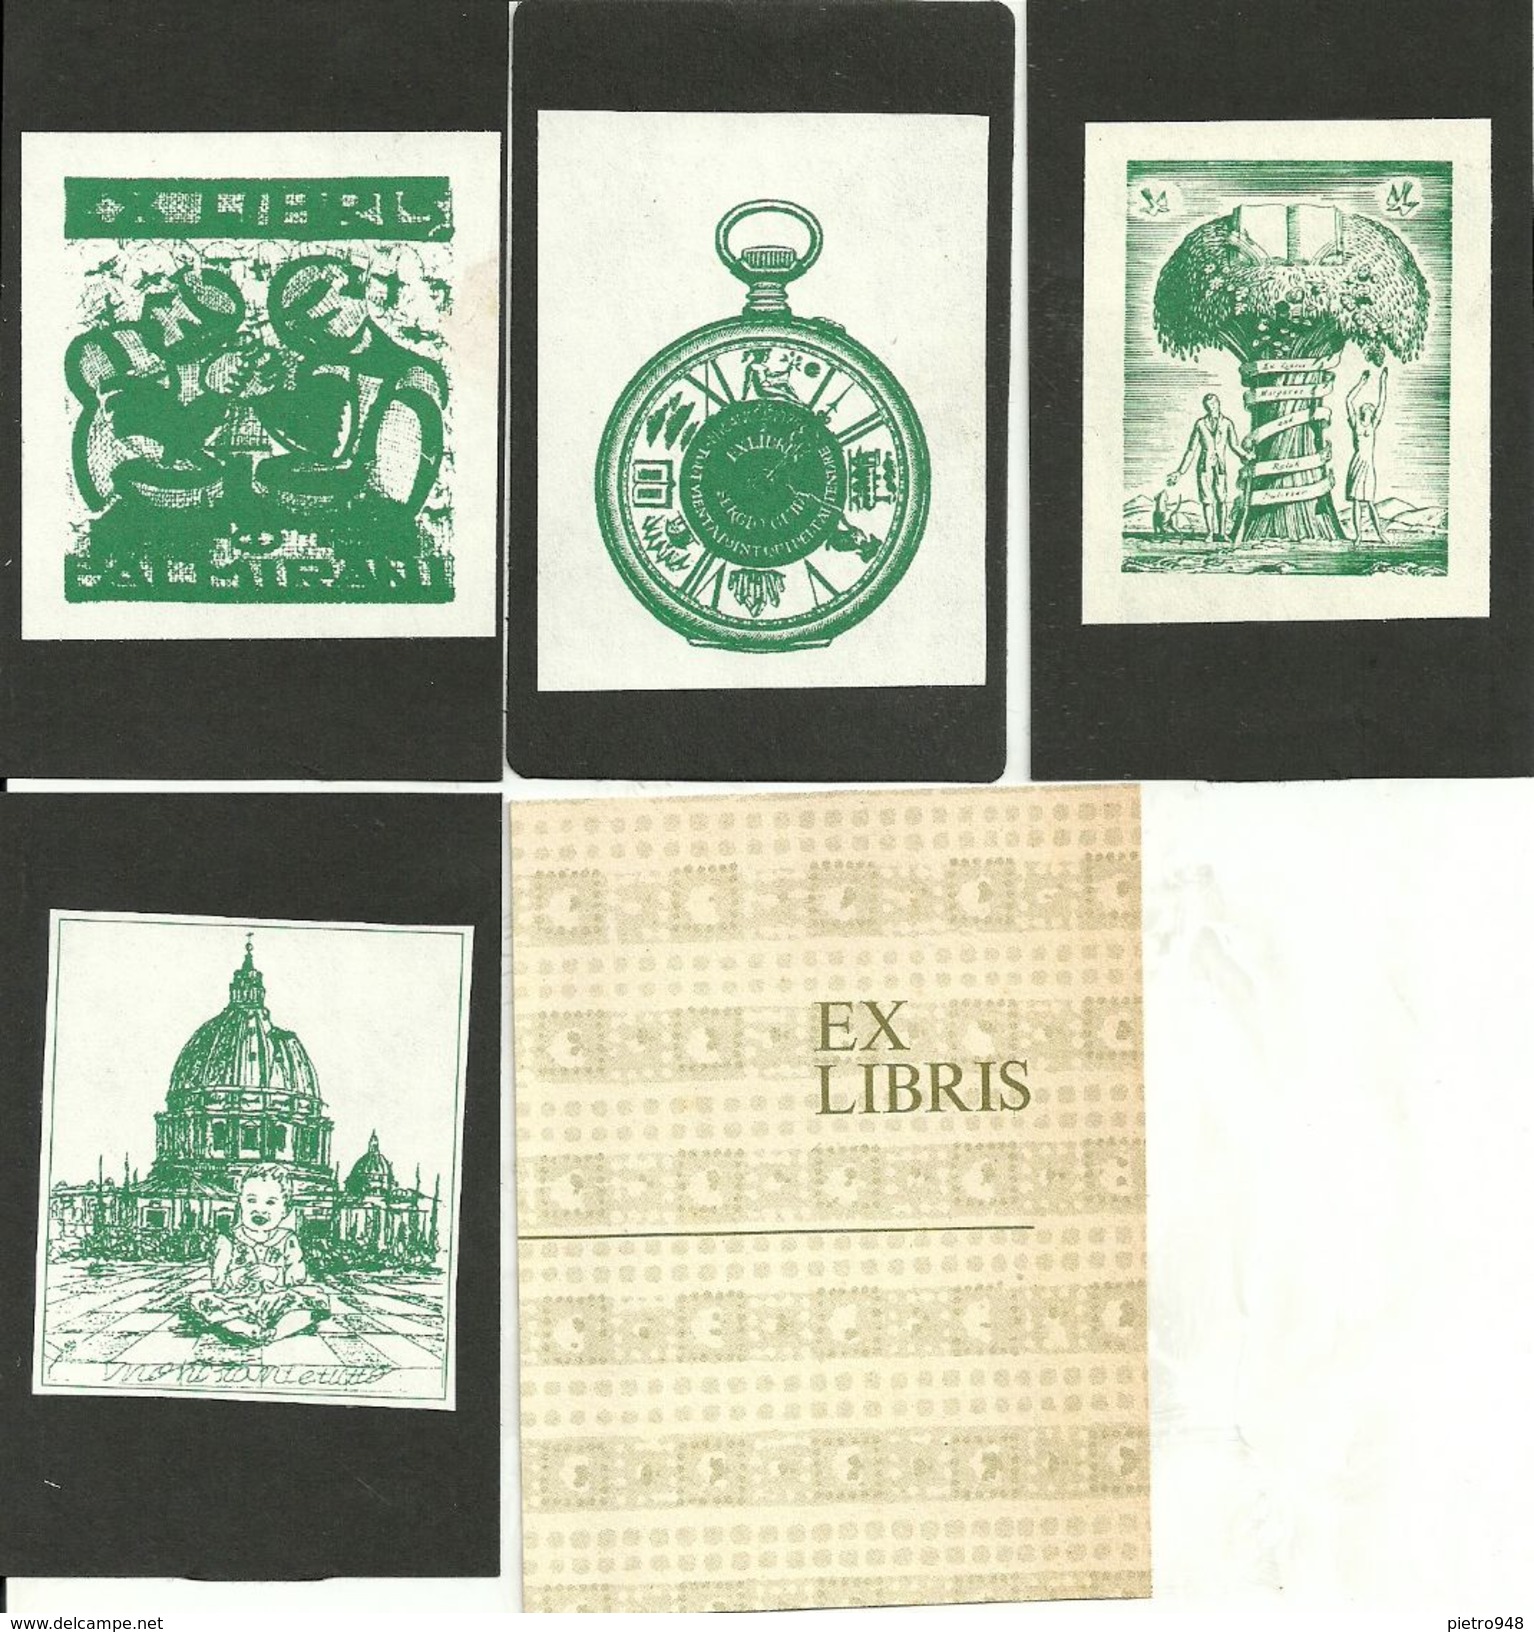 Ex Libris (Exlibris), N. 4 Exlibris (1 Di Palmirani Remo, 1 Di Margareth And Ralph Pulitzer, 2 Autori Illeggibili) - Bookplates